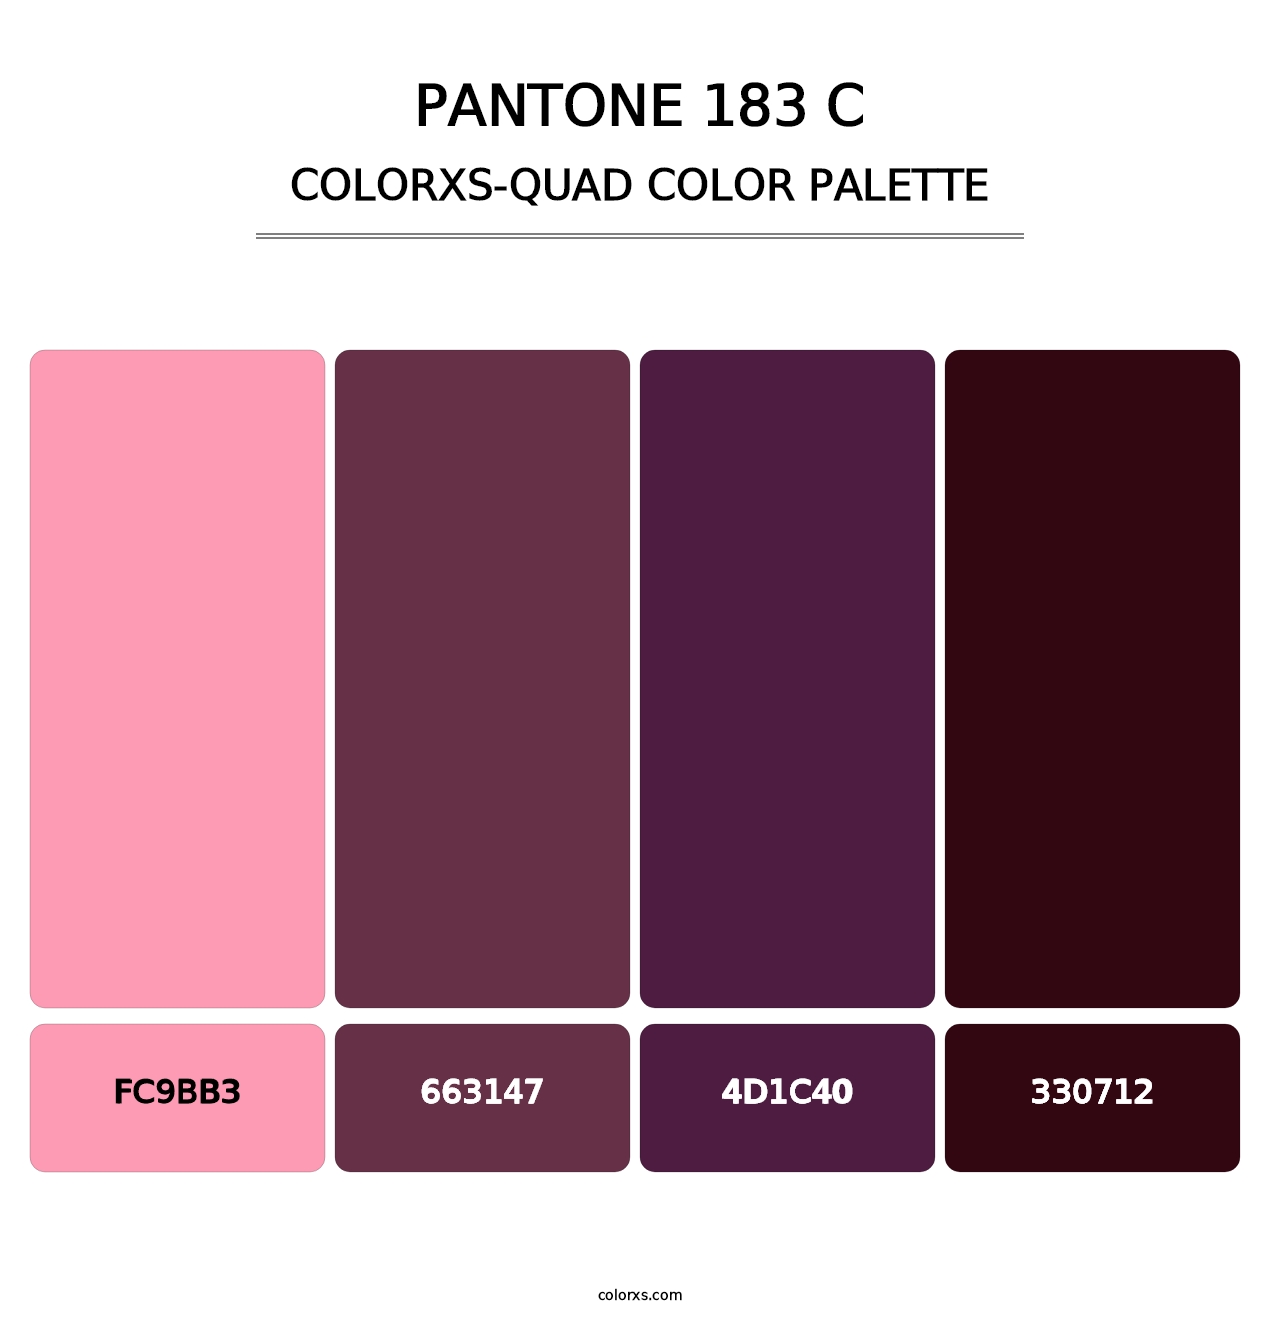 PANTONE 183 C - Colorxs Quad Palette